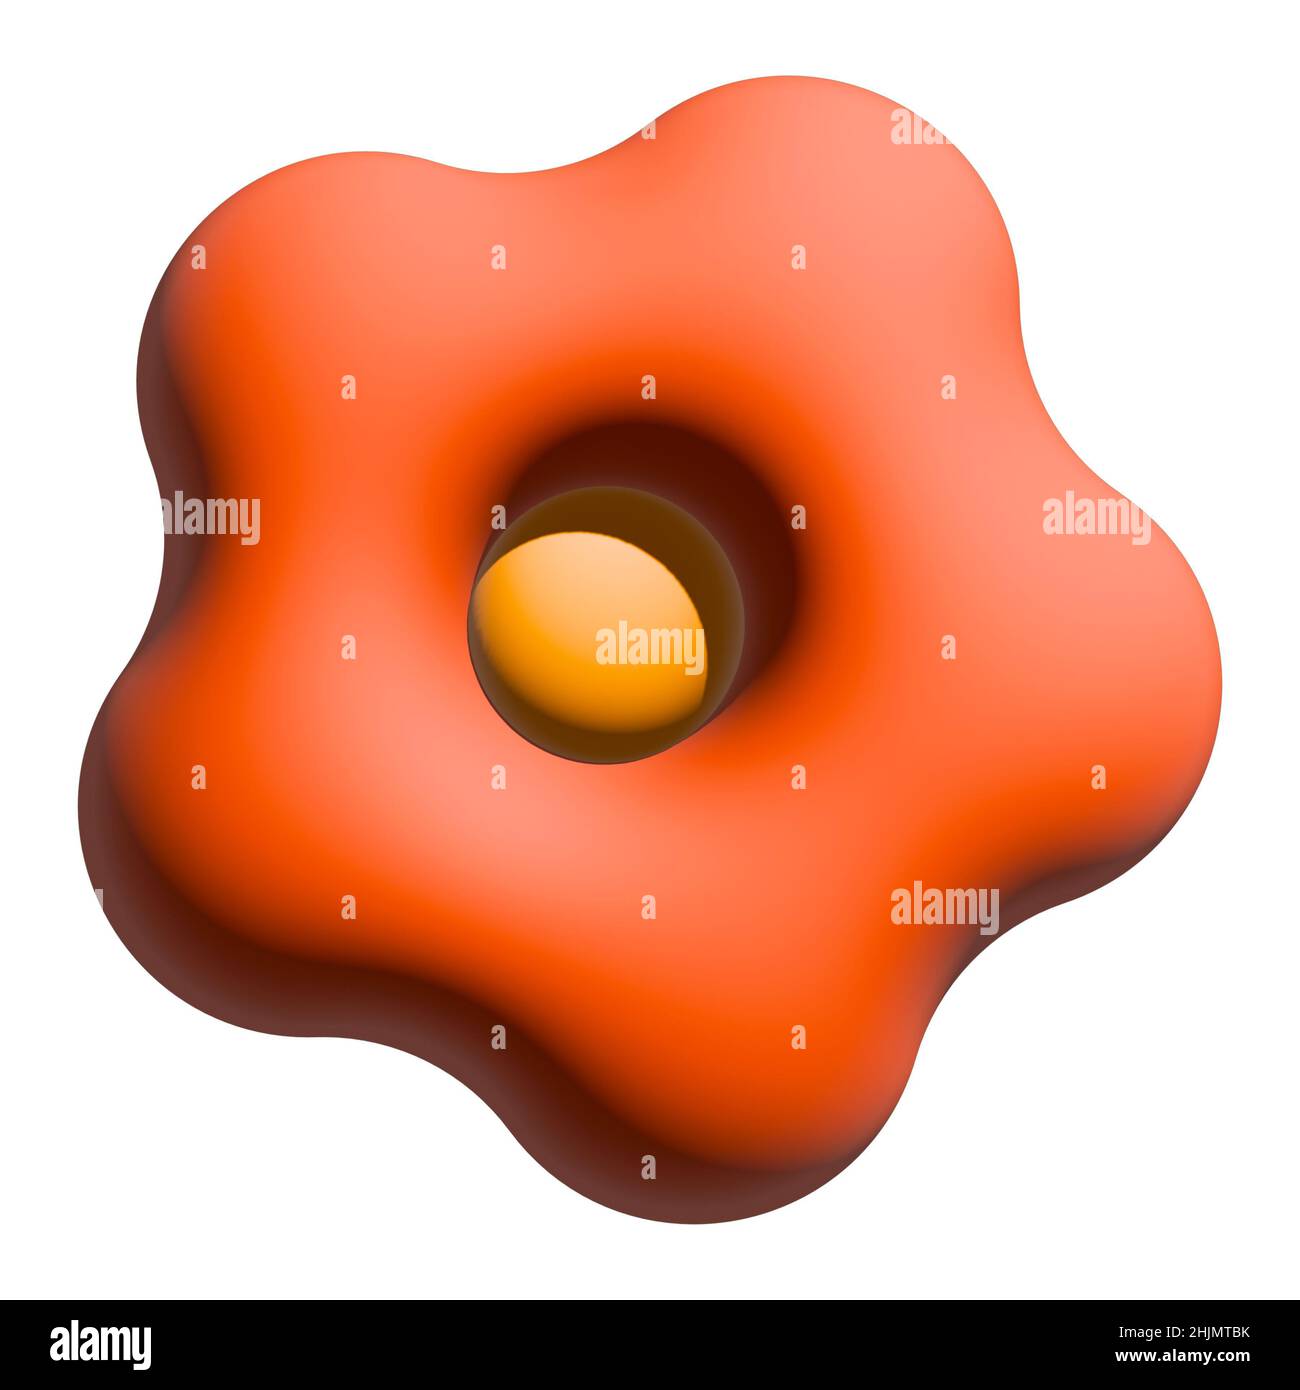 3D illustrazione. Immagine astratta di un fiore di colore arancione in stile cartoon minimalista. Isolare. Segnale. Icona. Immagine semplice per il design e i social network. Foto Stock